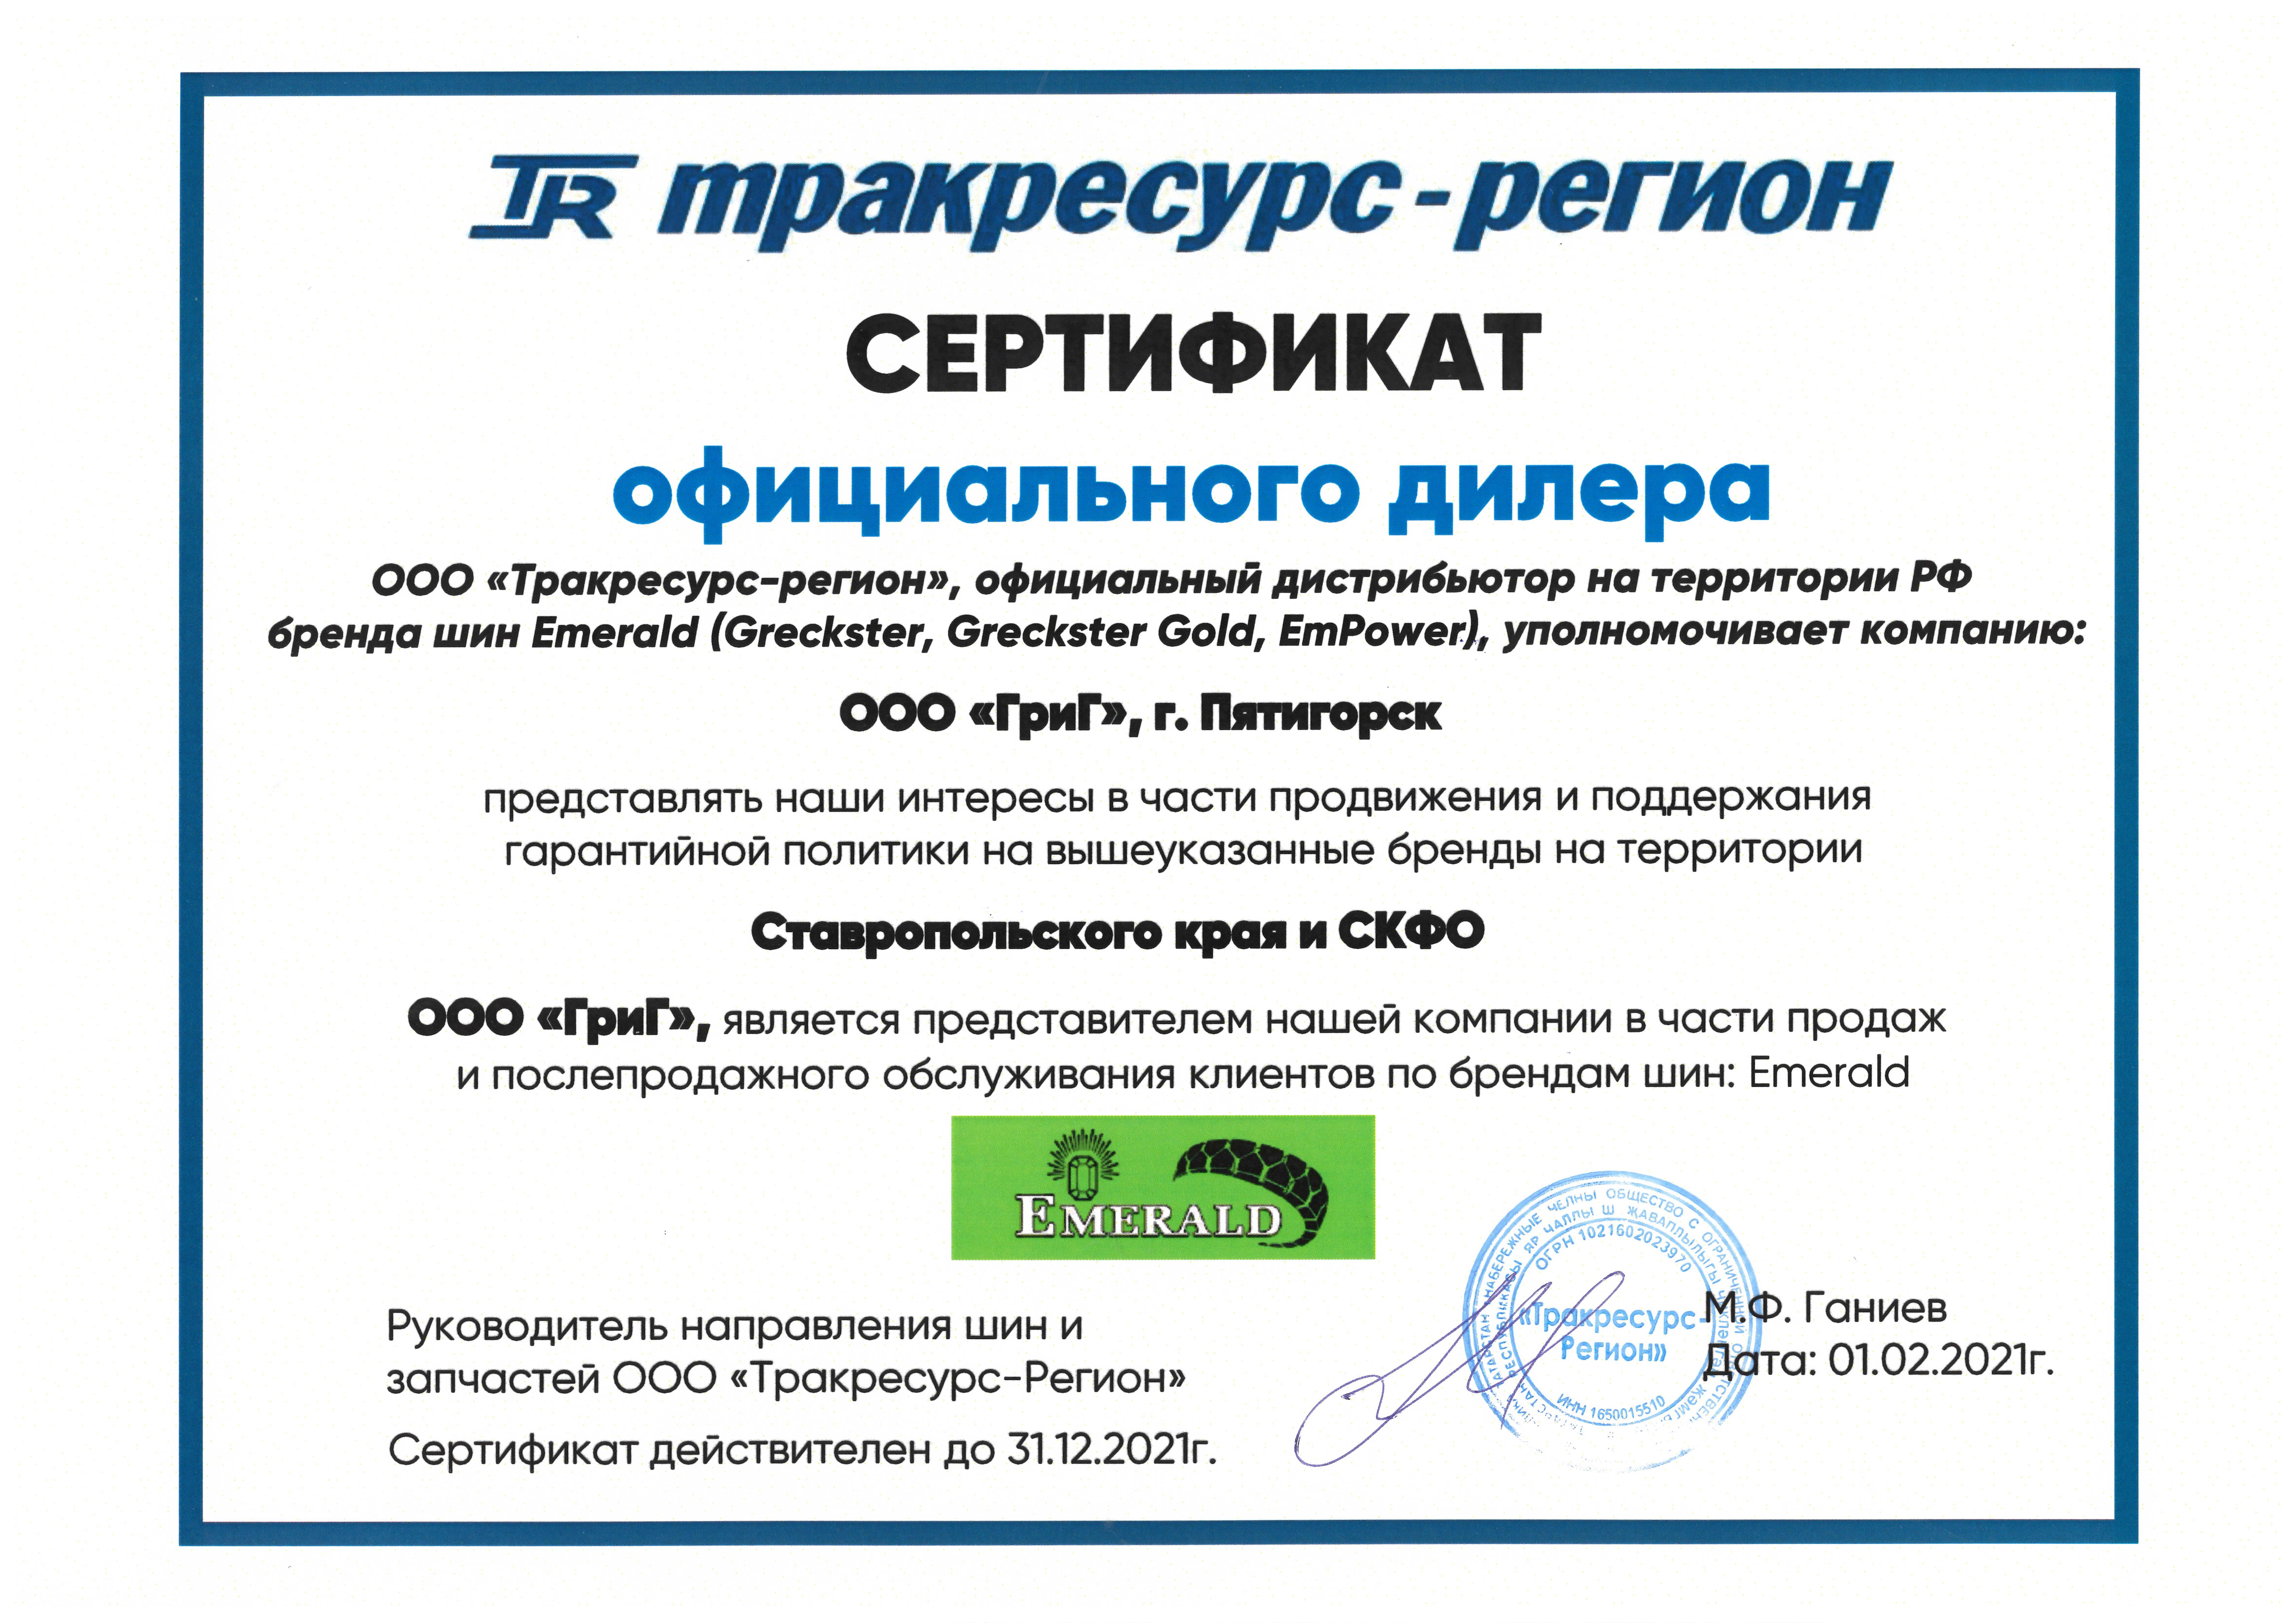 Сертификат Официального дилера EMERALD 2021